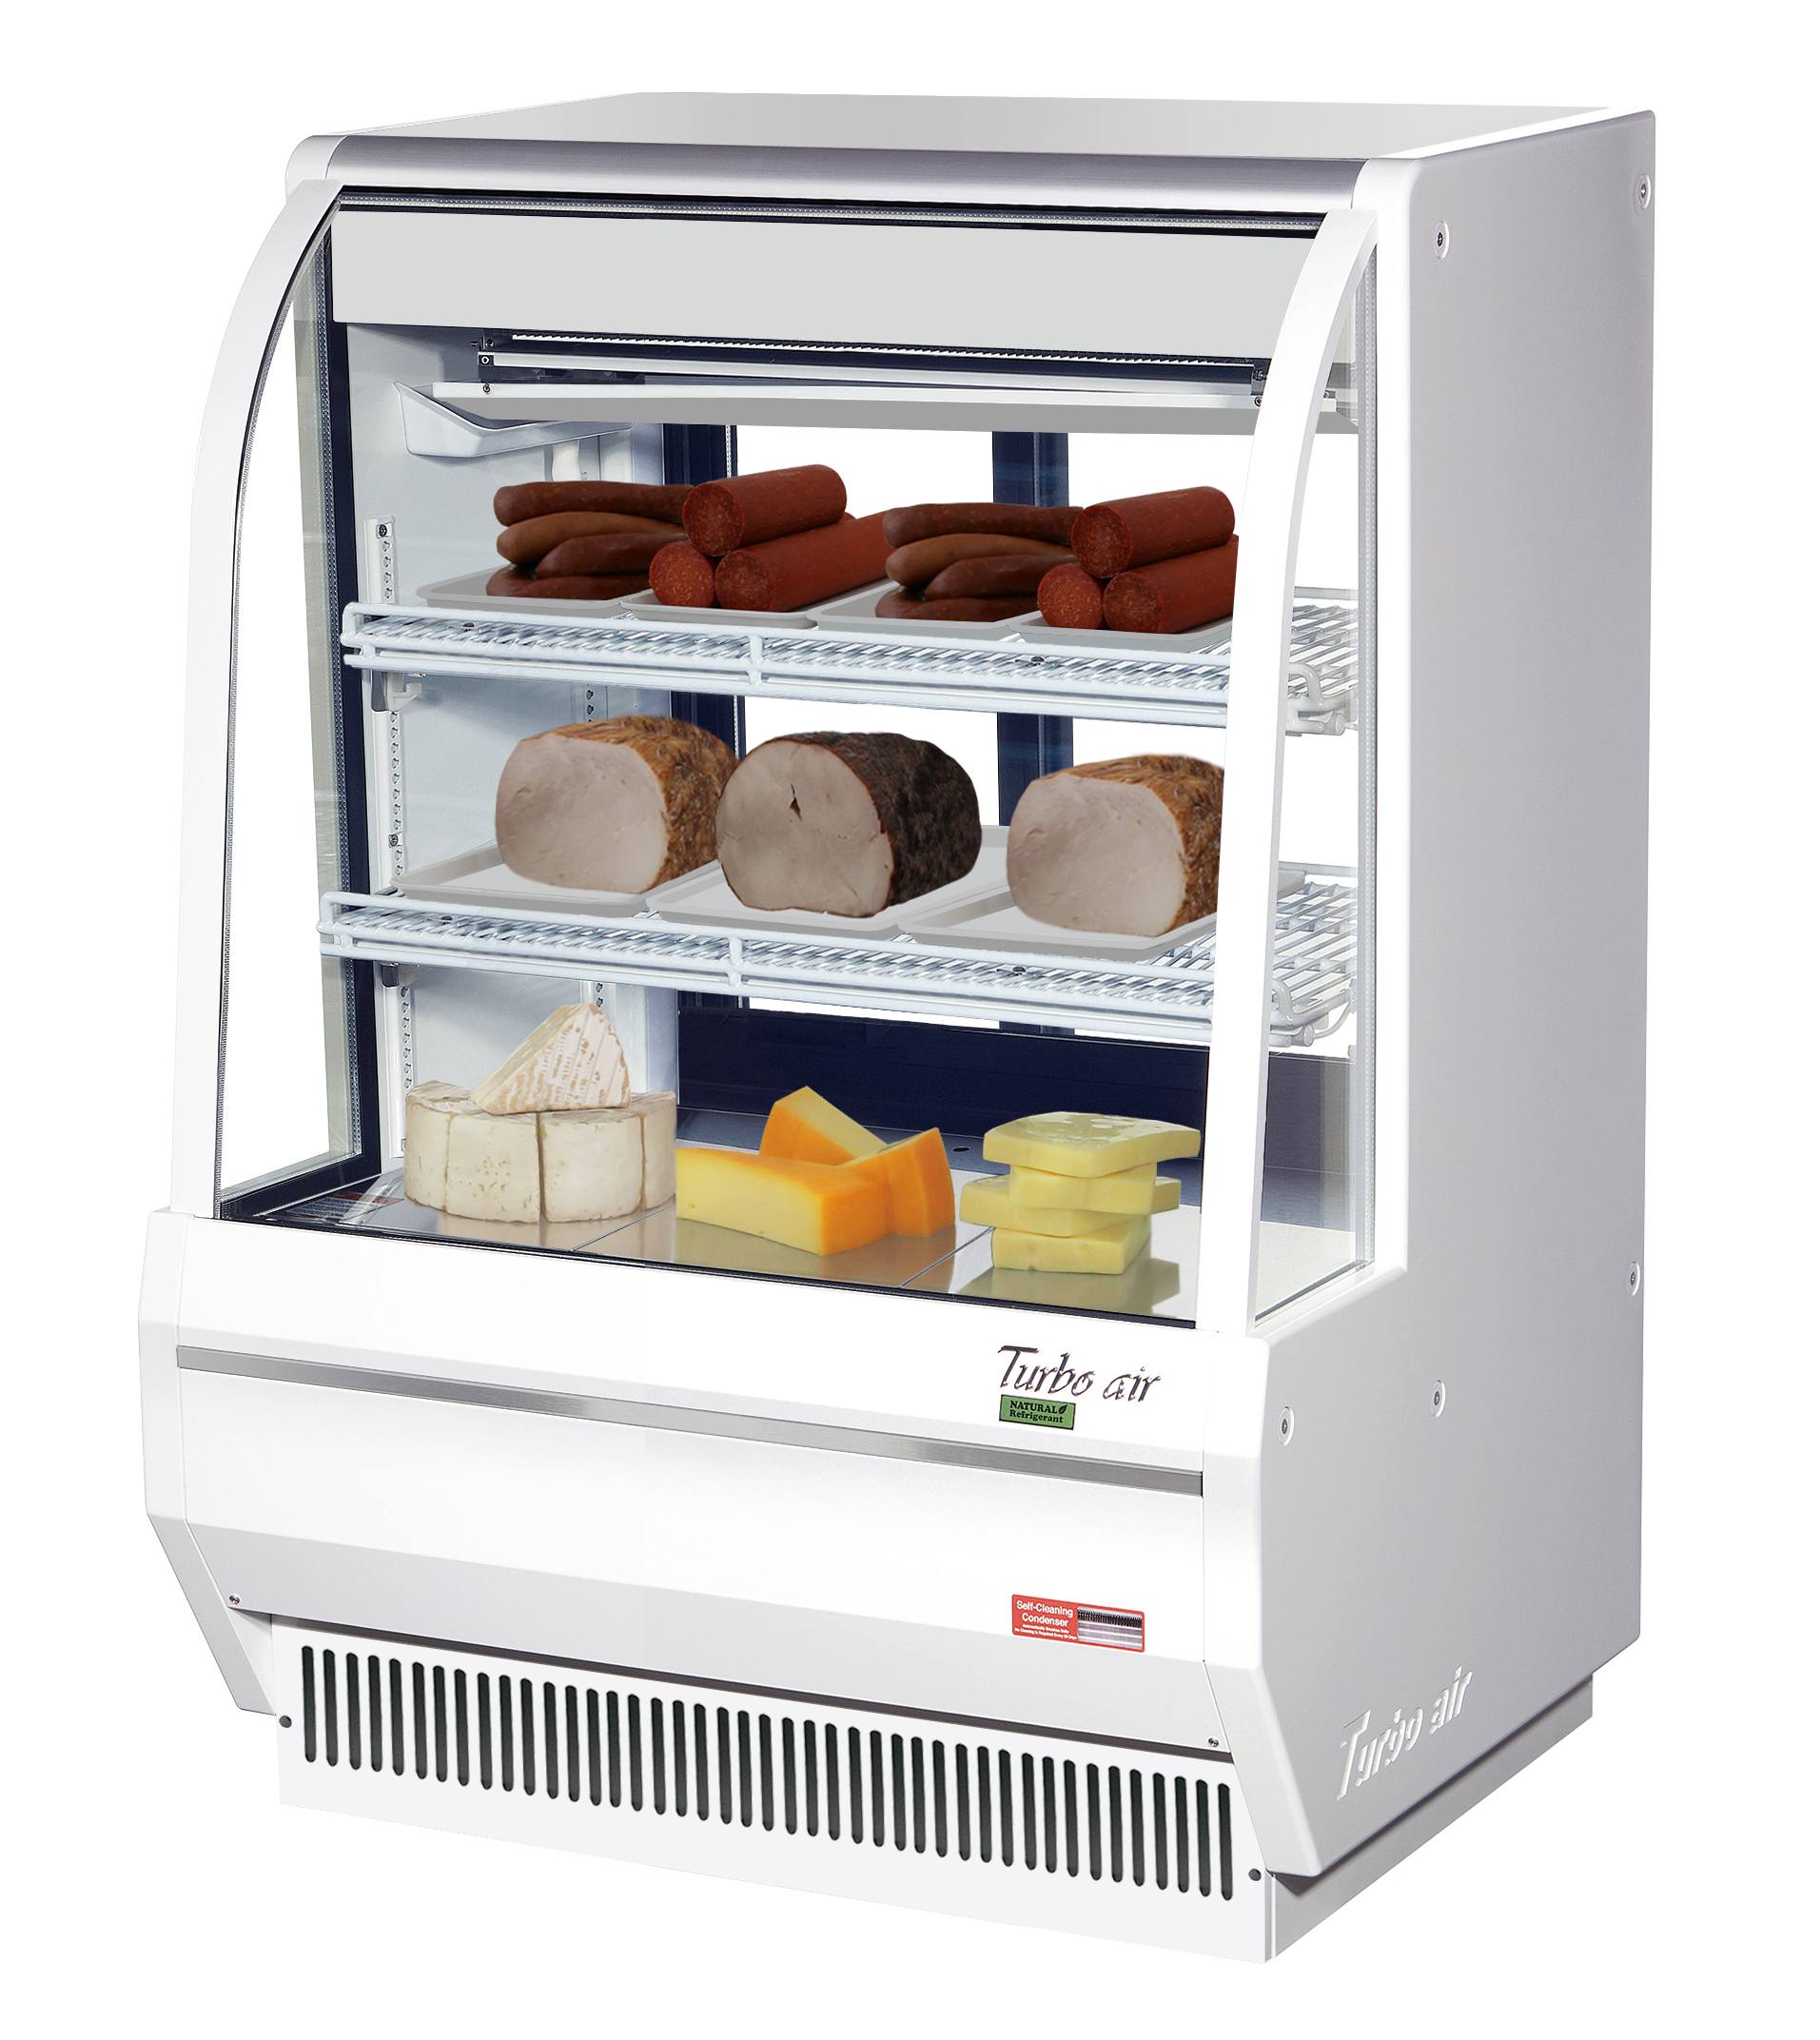 TCDD-36H-W(B)-N - Turbo Air Refrigerator Manufacturer :Turbo Air  Refrigerator Manufacturer